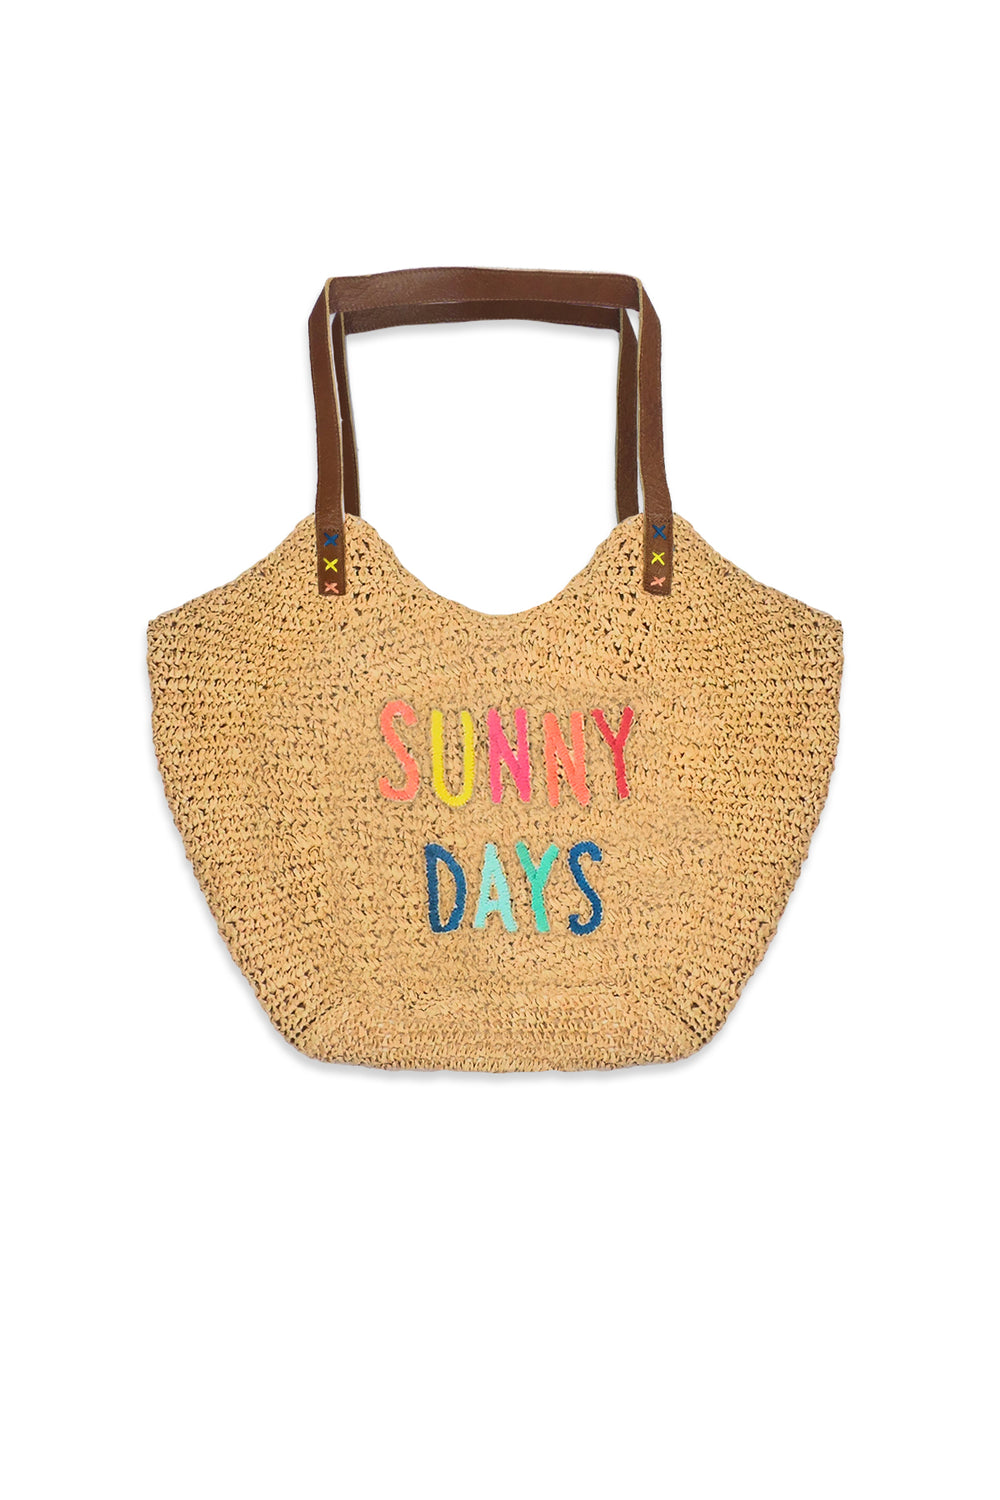 Beach Loves Bag - Sunny Days